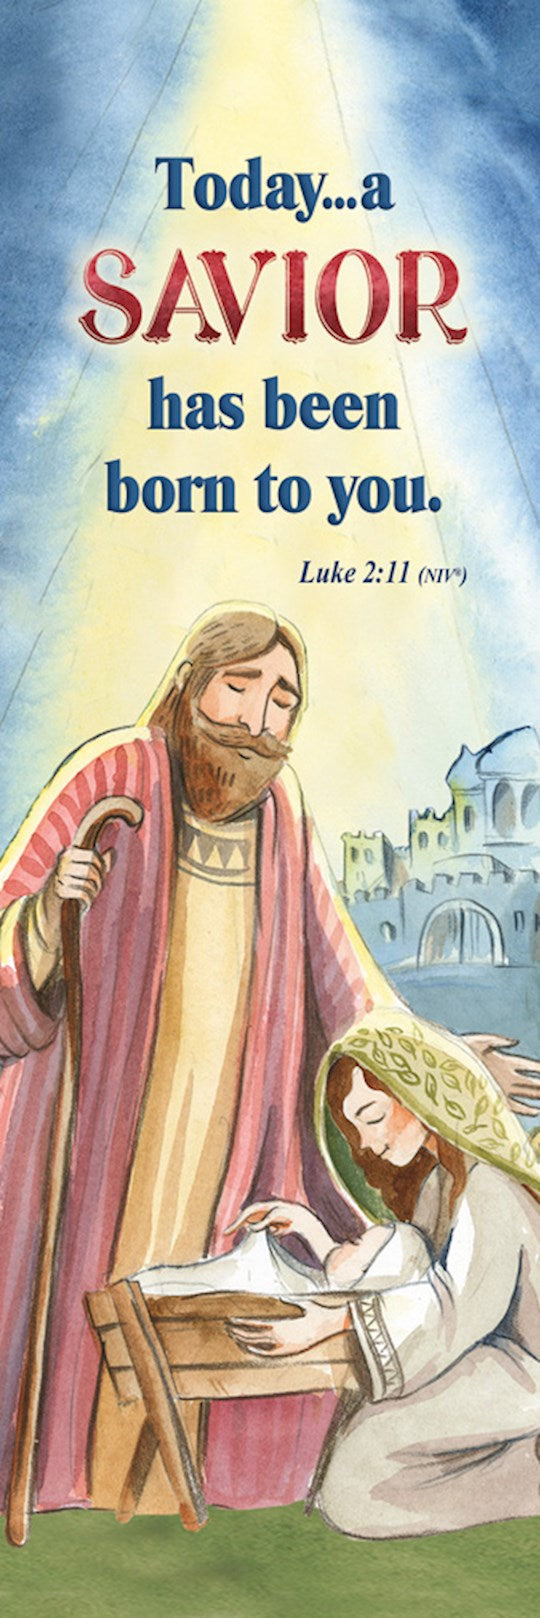 Natividad de Navidad (Lucas 2:11-12, NVI) [Marcador]